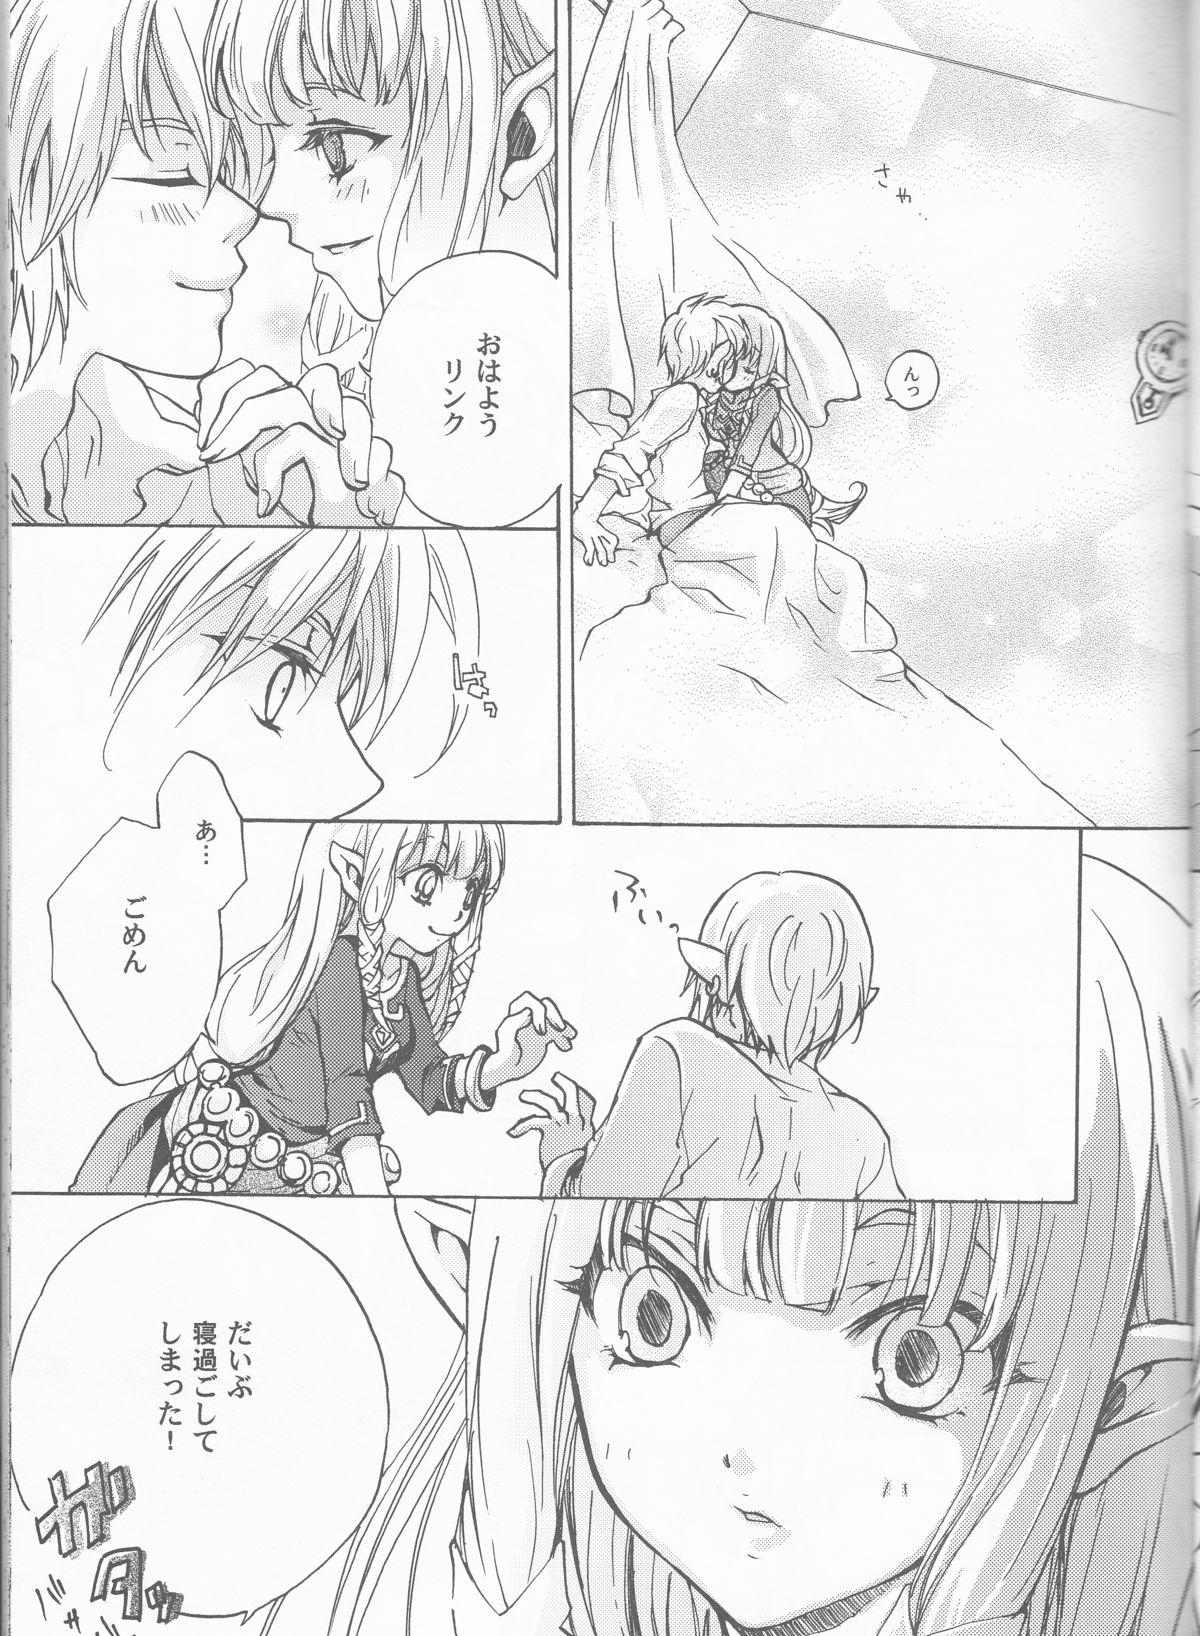 Rubia Hajimete no Natsu. - The legend of zelda Cojiendo - Page 7